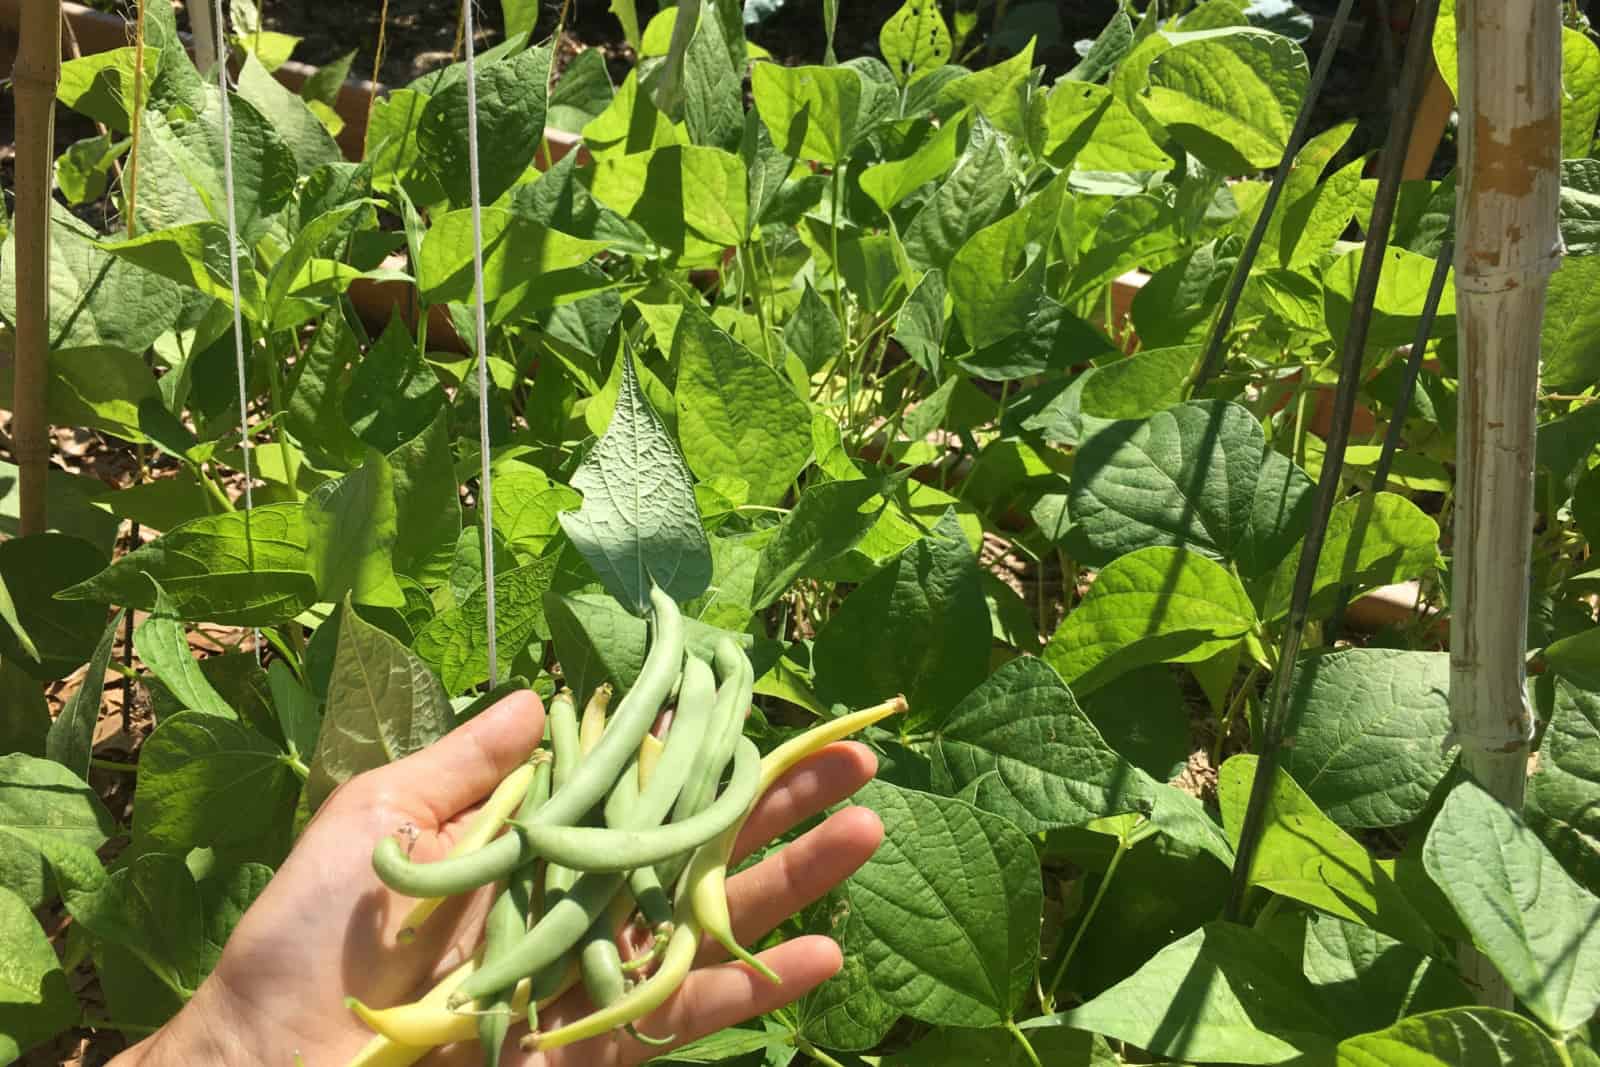 Bush beans growing in the backyard